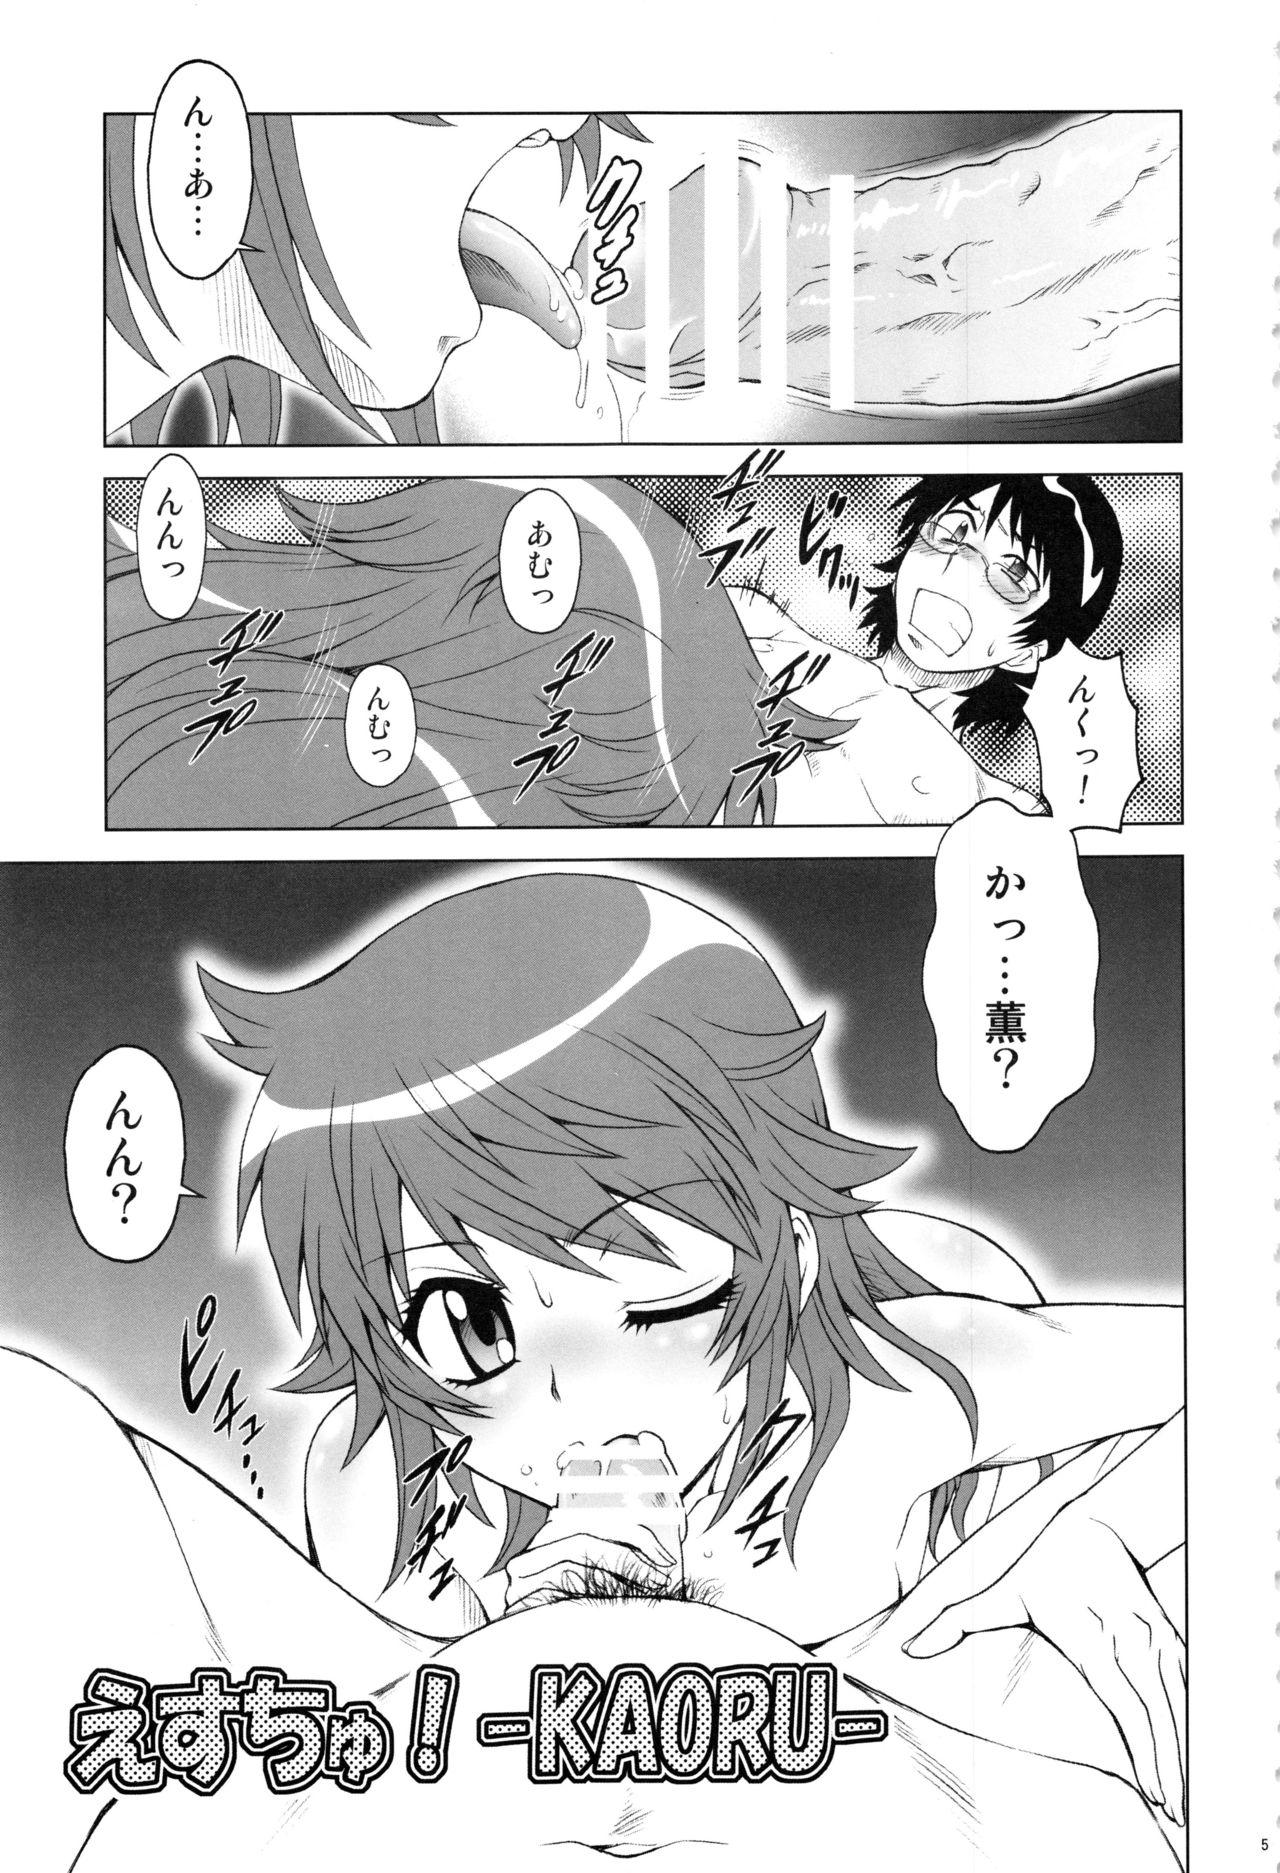 Straight Esuchu! Hitomatome Soushuuhen 6 - Zettai karen children Parody - Page 4